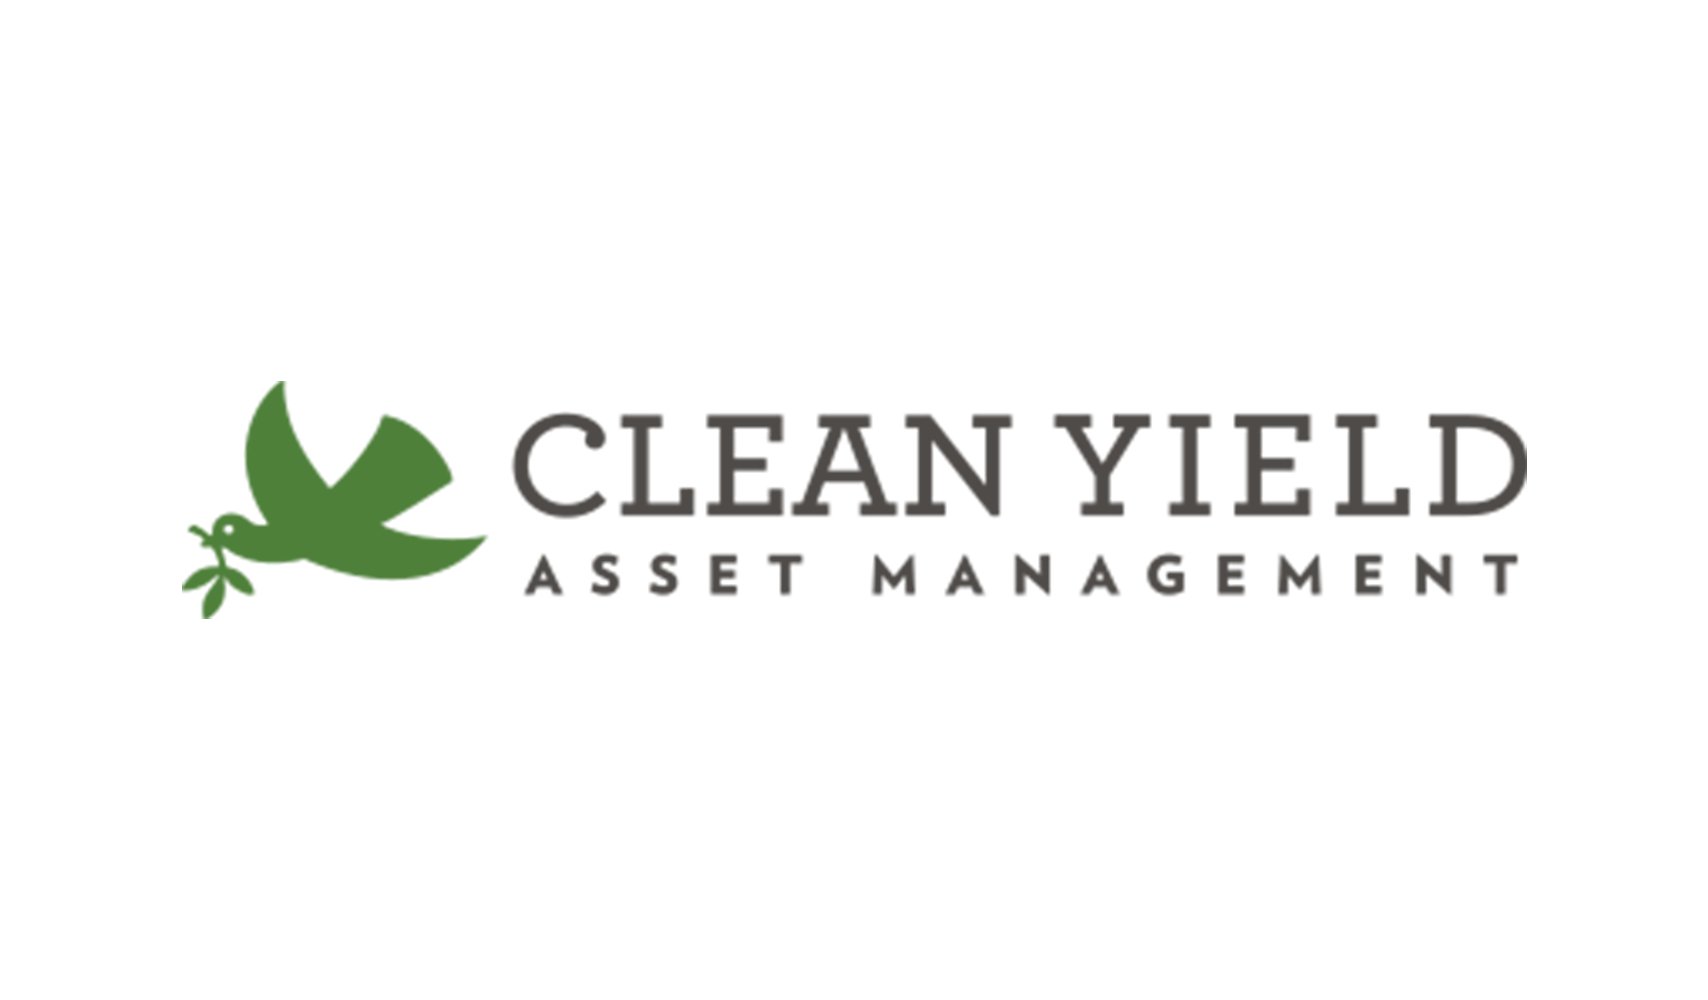 05-clean yield asset management-logo.jpg